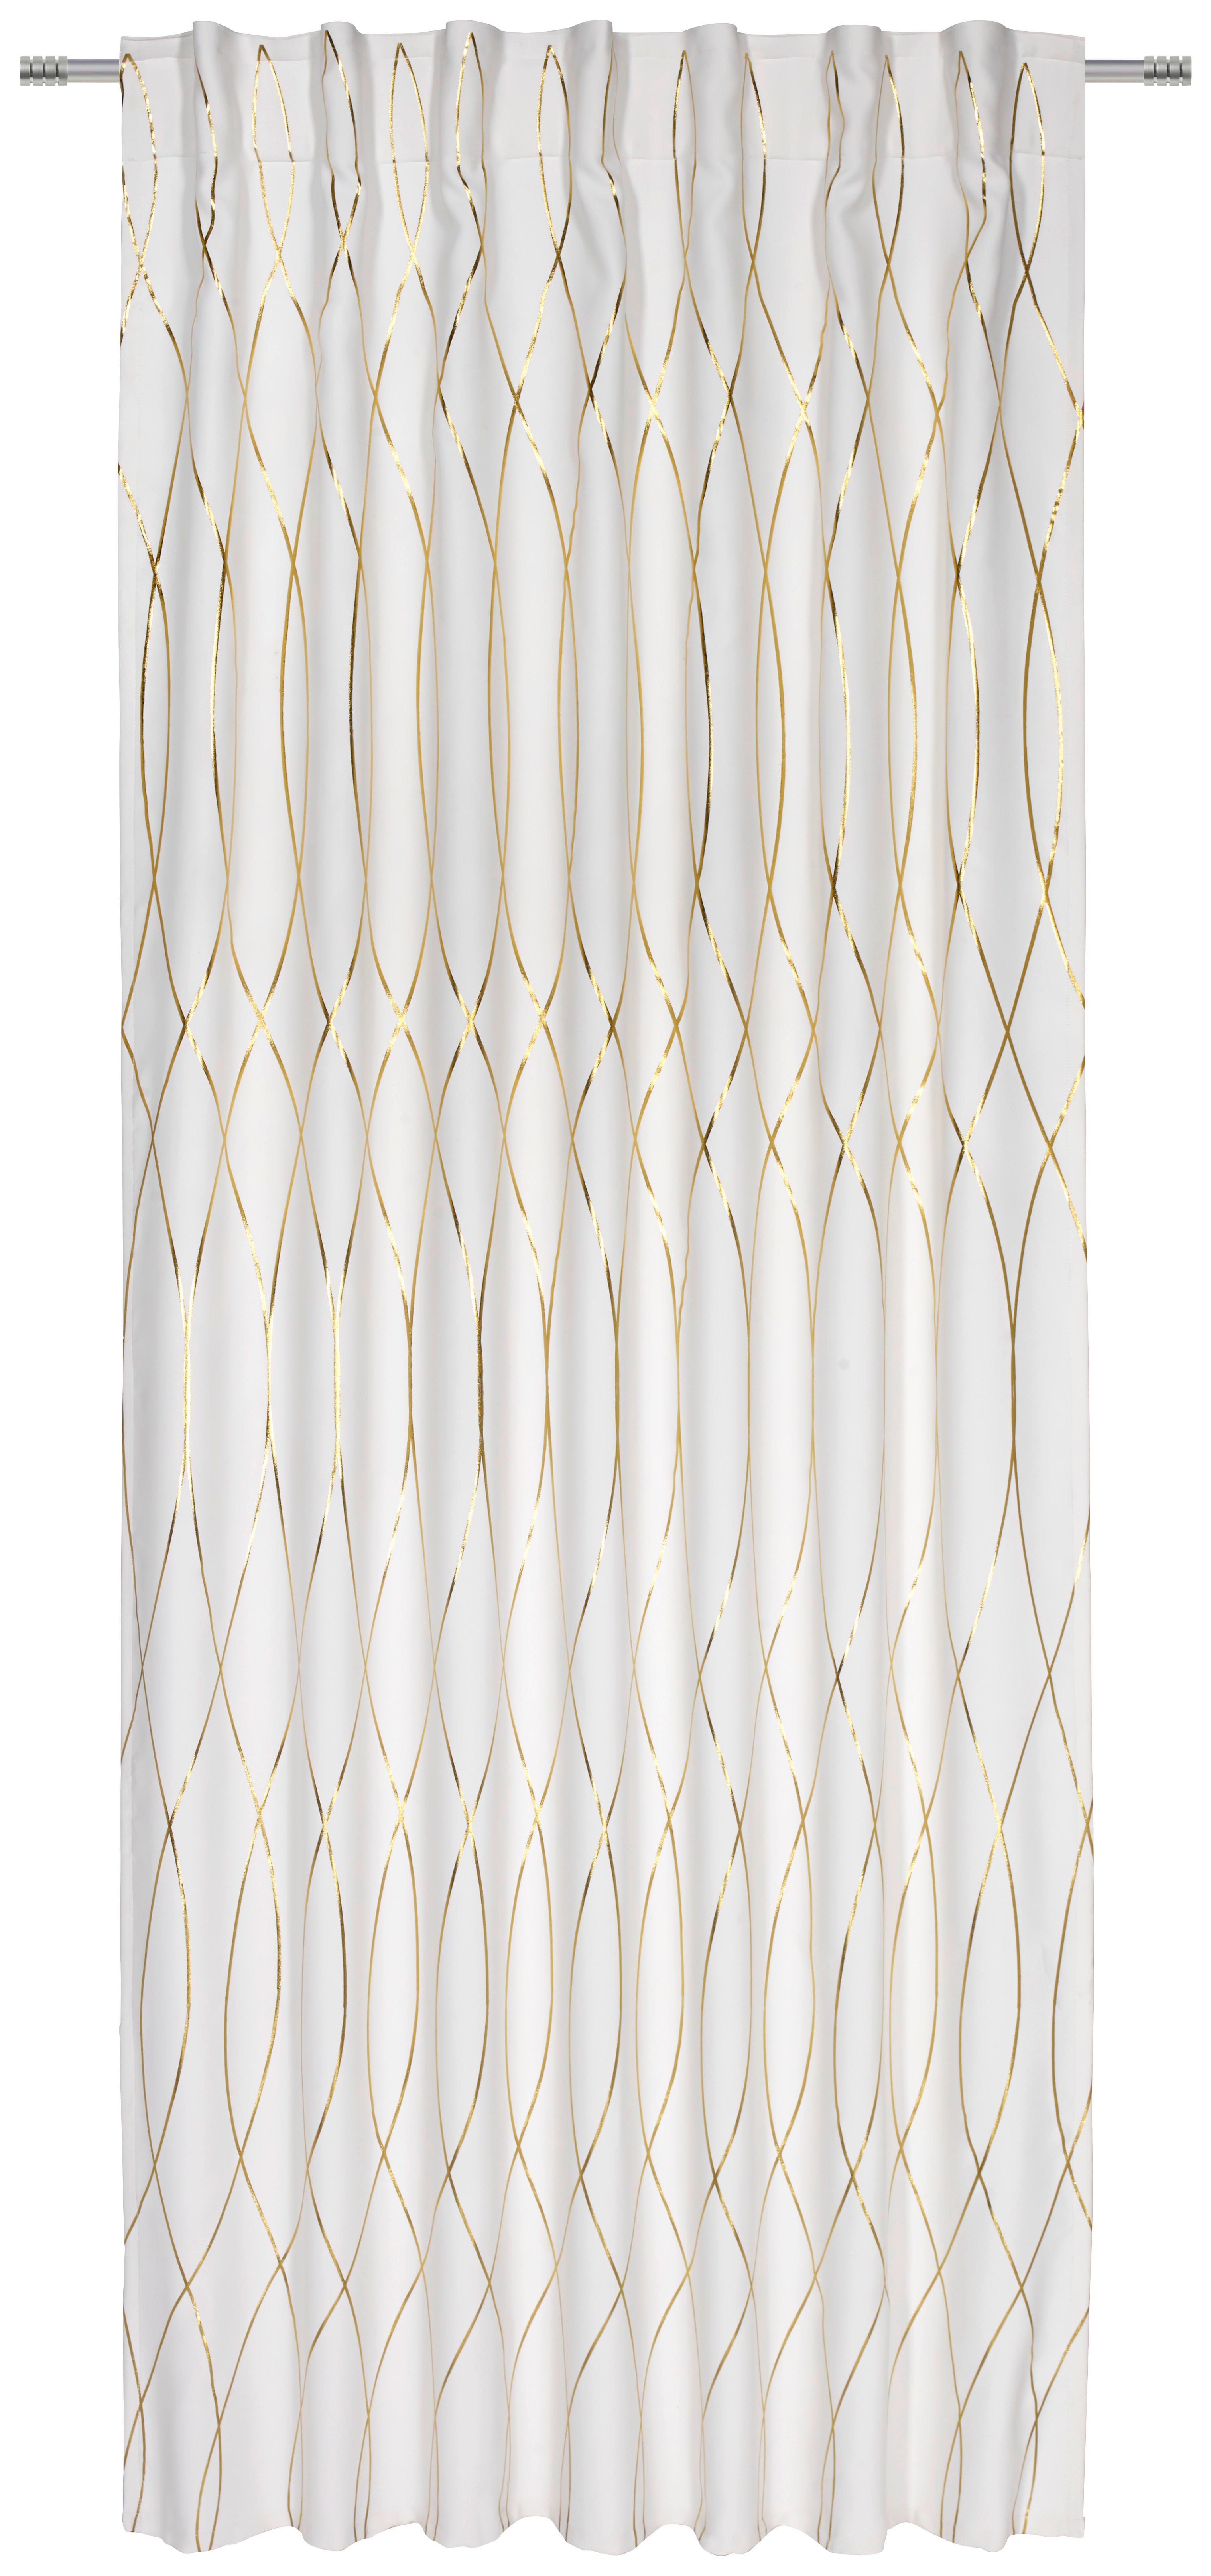 Zatemňovací Závěs Glamour, 140/245 Cm - bílá/barvy zlata, Lifestyle, textil (140/245cm) - Modern Living